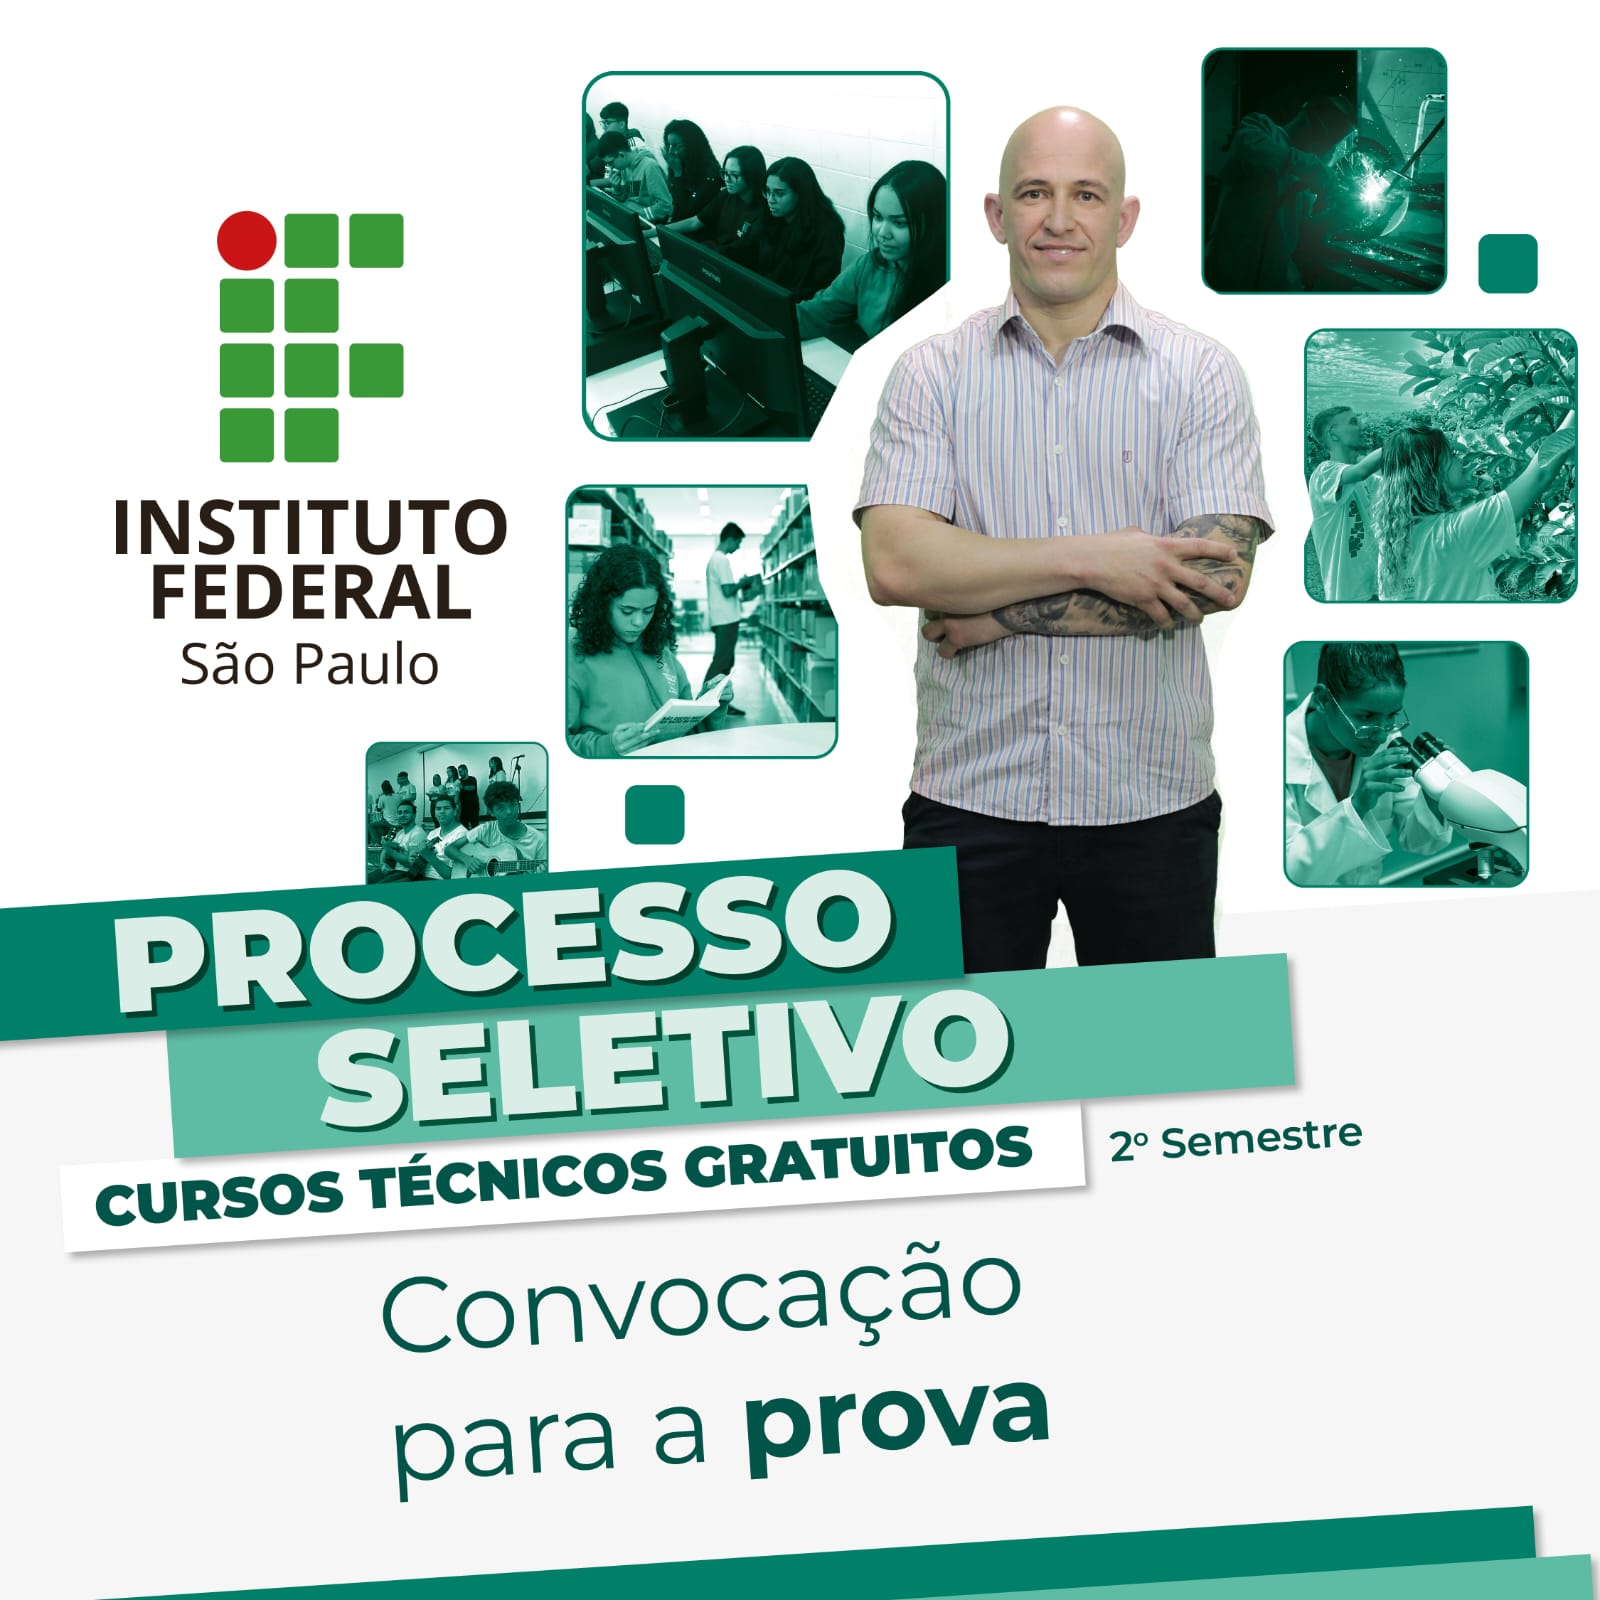 Convocação_prova_processo_seletivo_cursos_técnicos_-_2º_semestre.jpeg